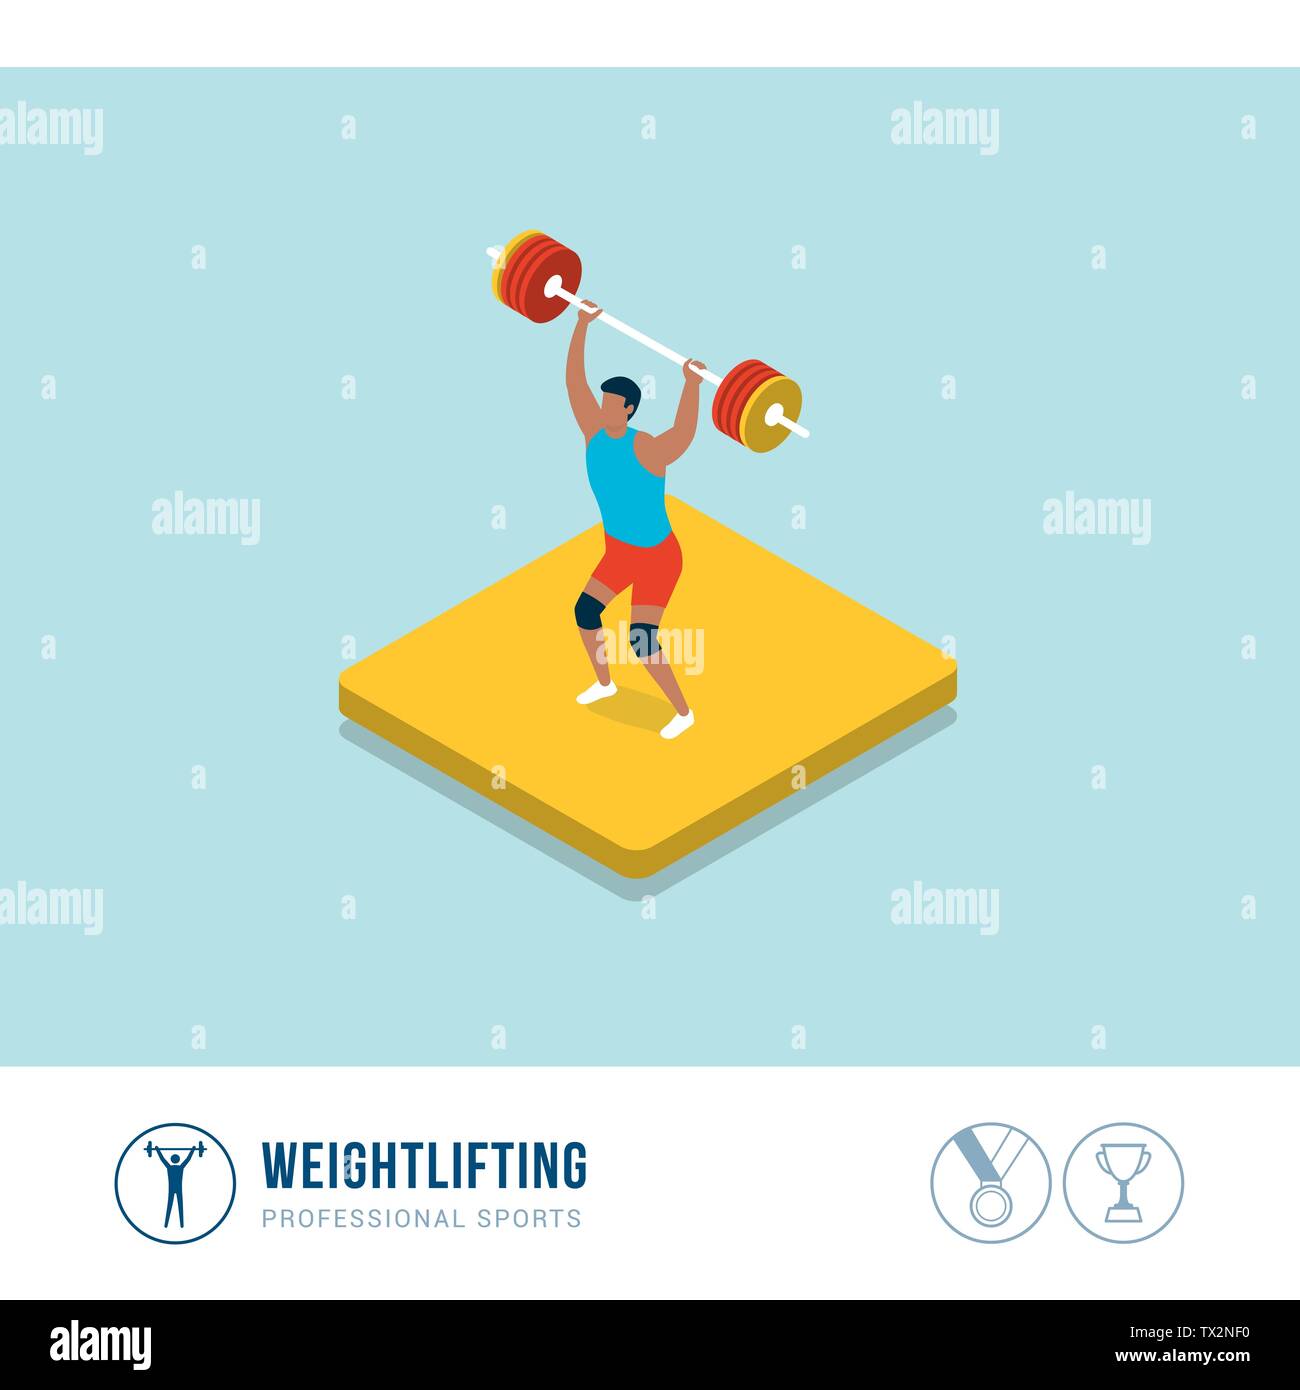 La competencia deportiva profesional: el levantamiento de pesas, levantamiento de pesas, atleta muscular Ilustración del Vector